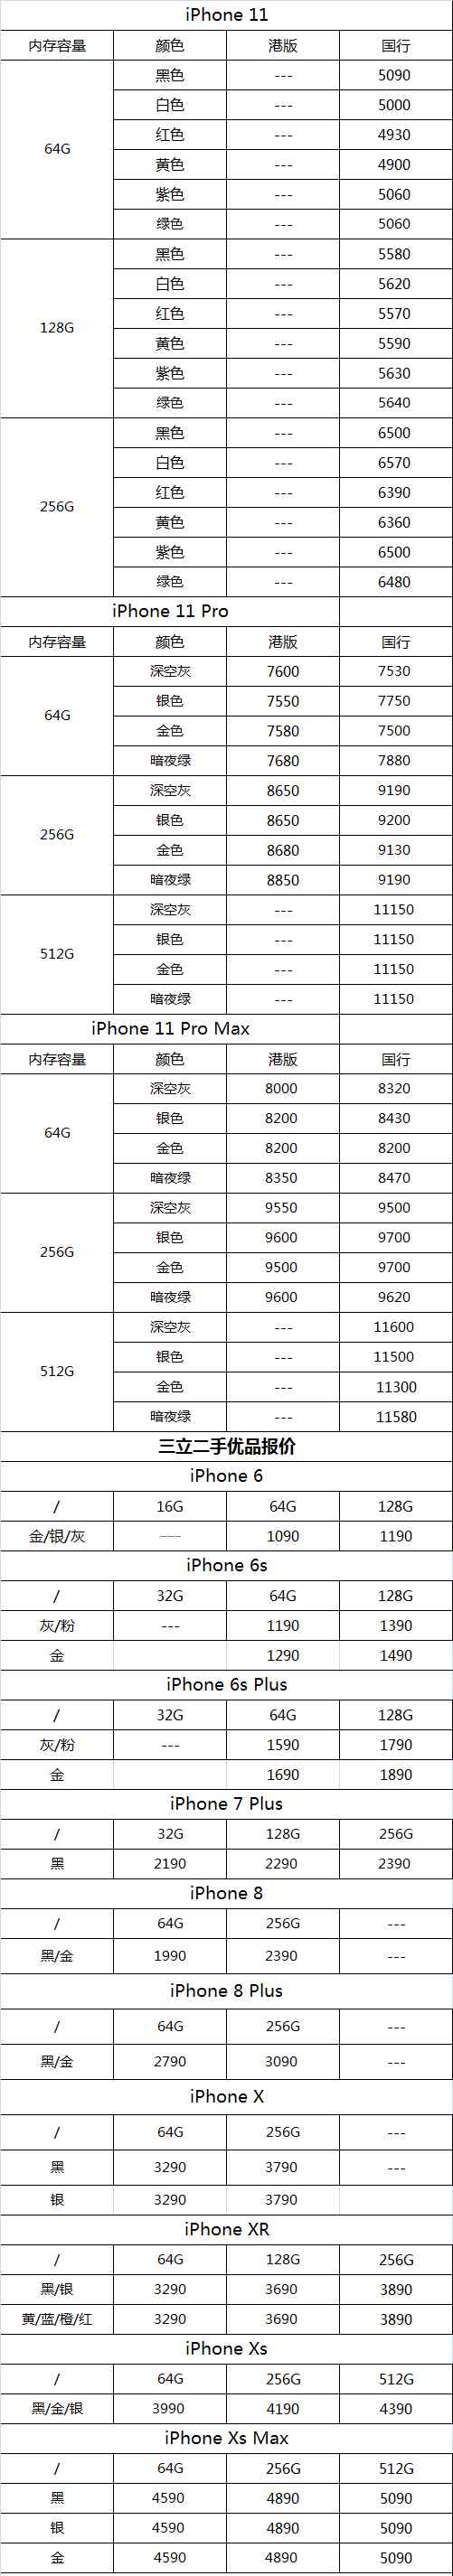 苹果3手机报价 【今日报价】iPhone 11/11 Pro/11 Pro Max及二手苹果手机3月27日报价